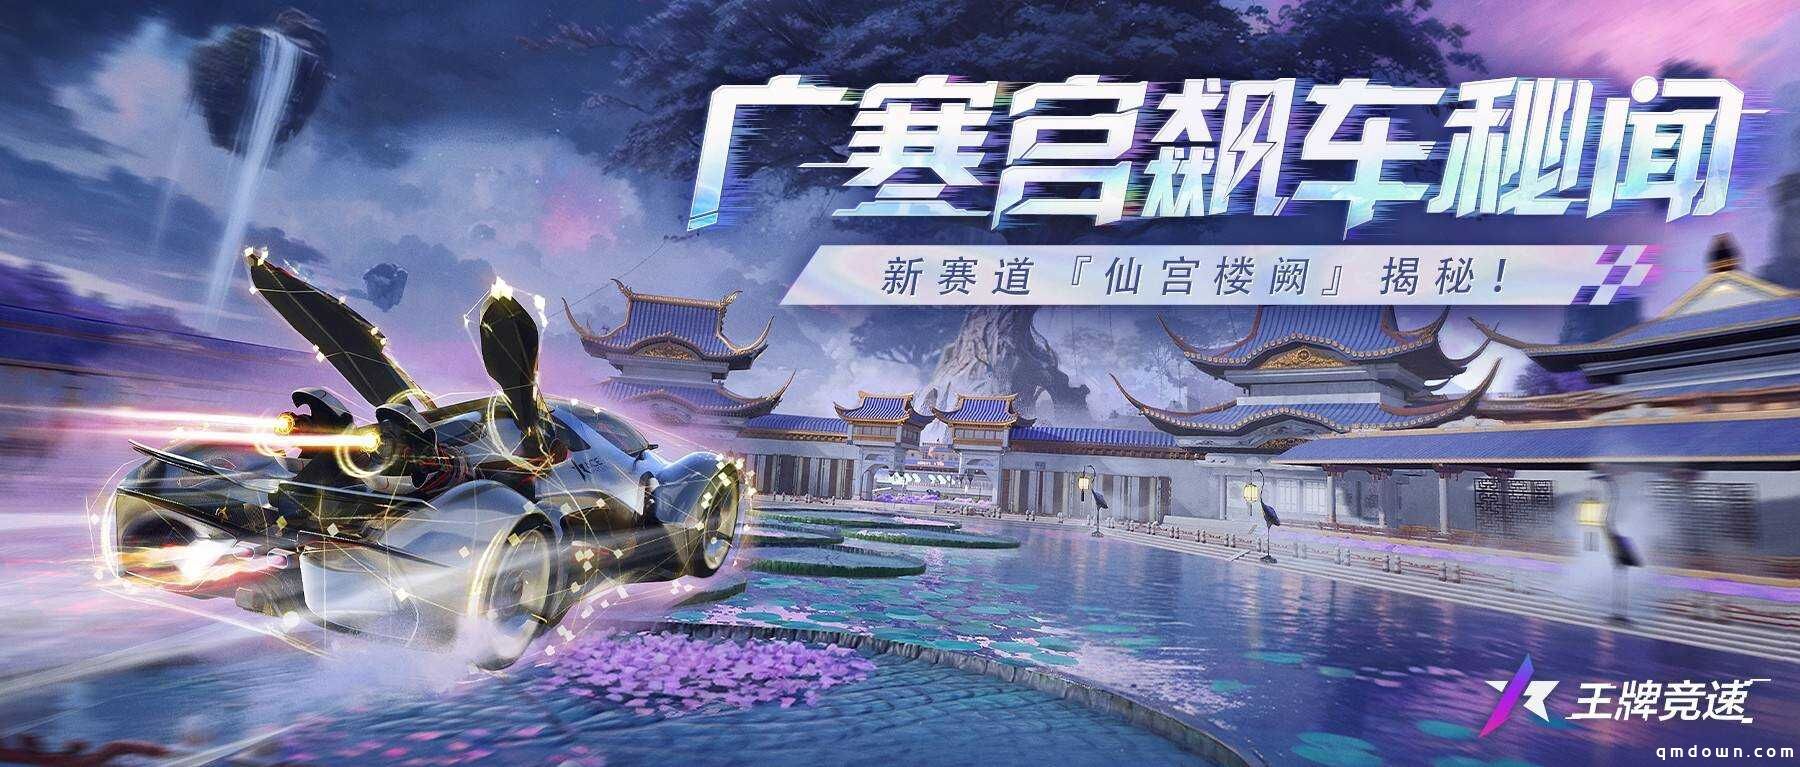 广寒宫飙车秘闻：《王牌竞速》新赛道“仙宫楼阙”惊艳揭幕